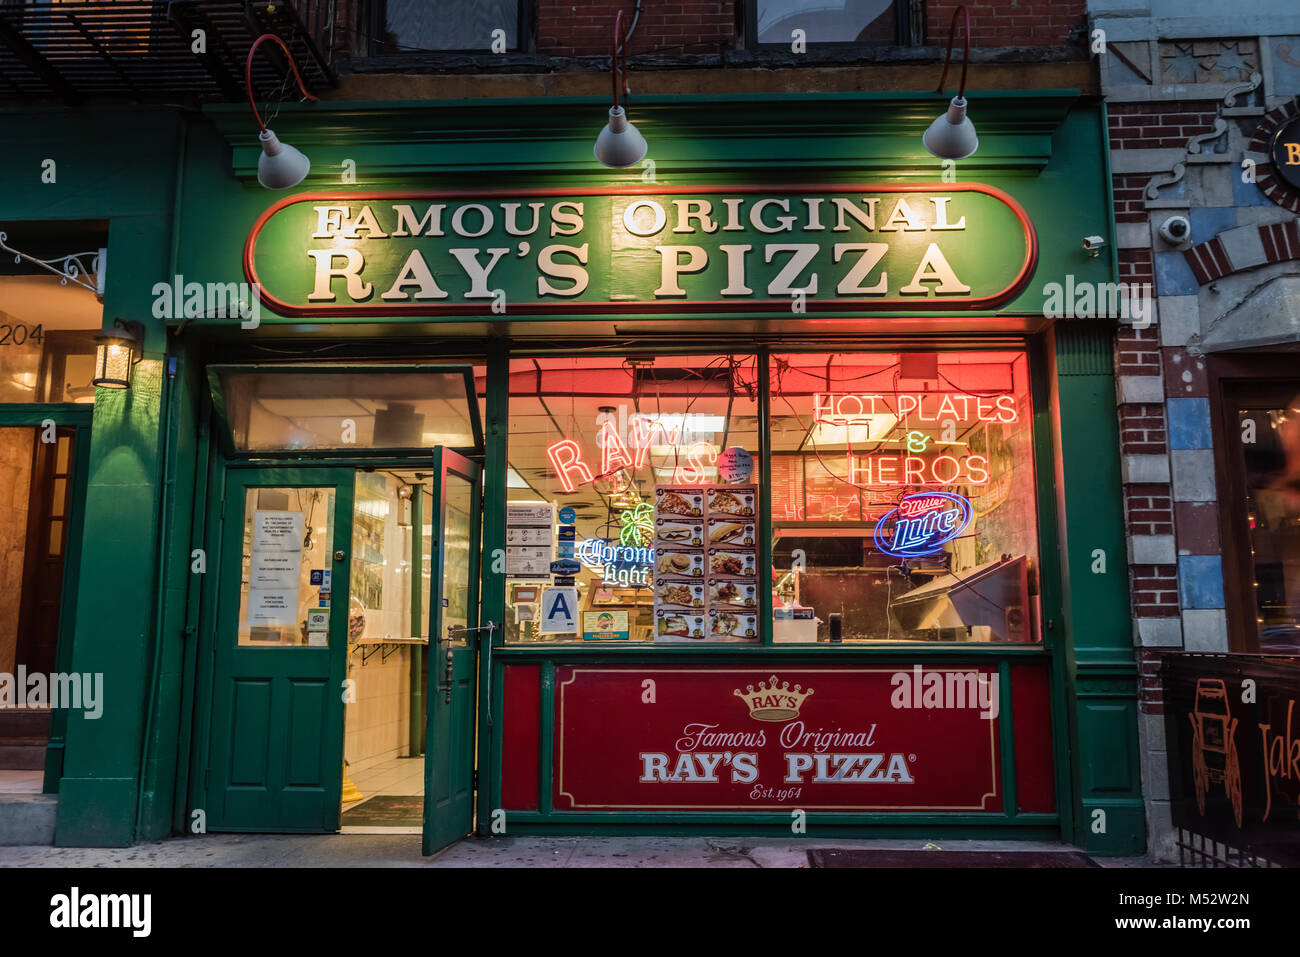 Ray's Pizza, et ses nombreuses variantes telles que "Ray's Pizza Original' et 'Original'Ray's Pizza', sont des noms de NYC pizzerias populaires Banque D'Images